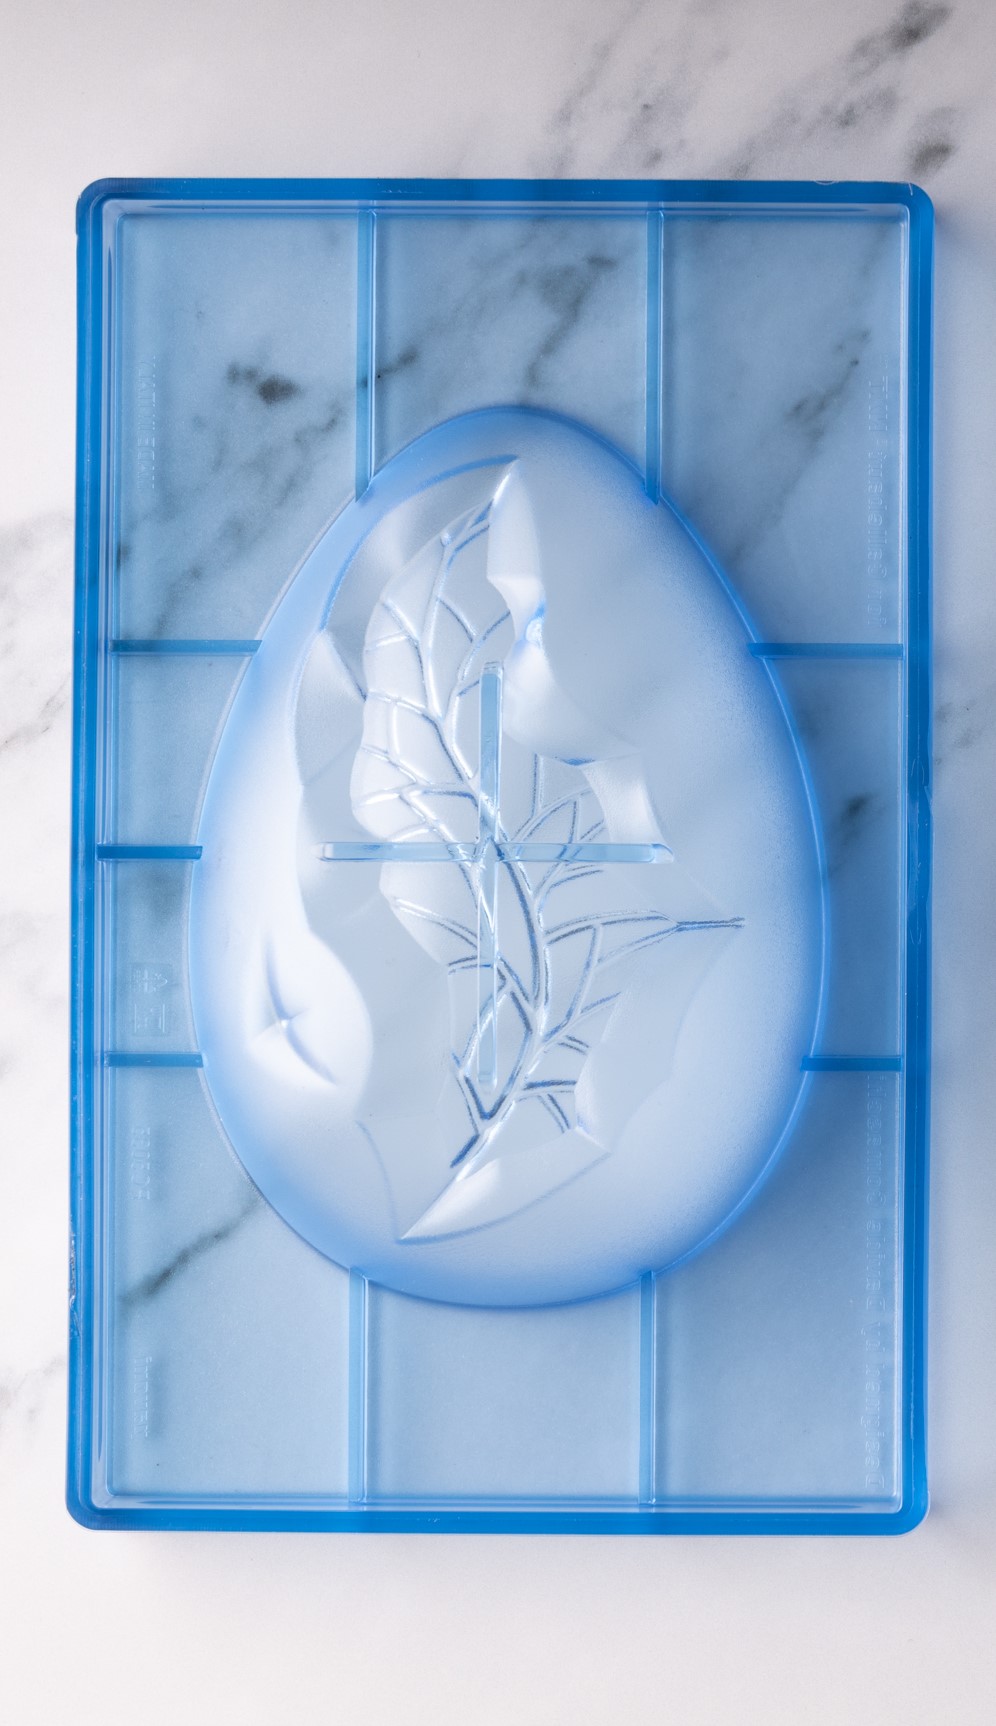 Se Professionel chokoladeform i polycarbonat - NXT The Easter Egg 13x18 cm hos BageTid.dk